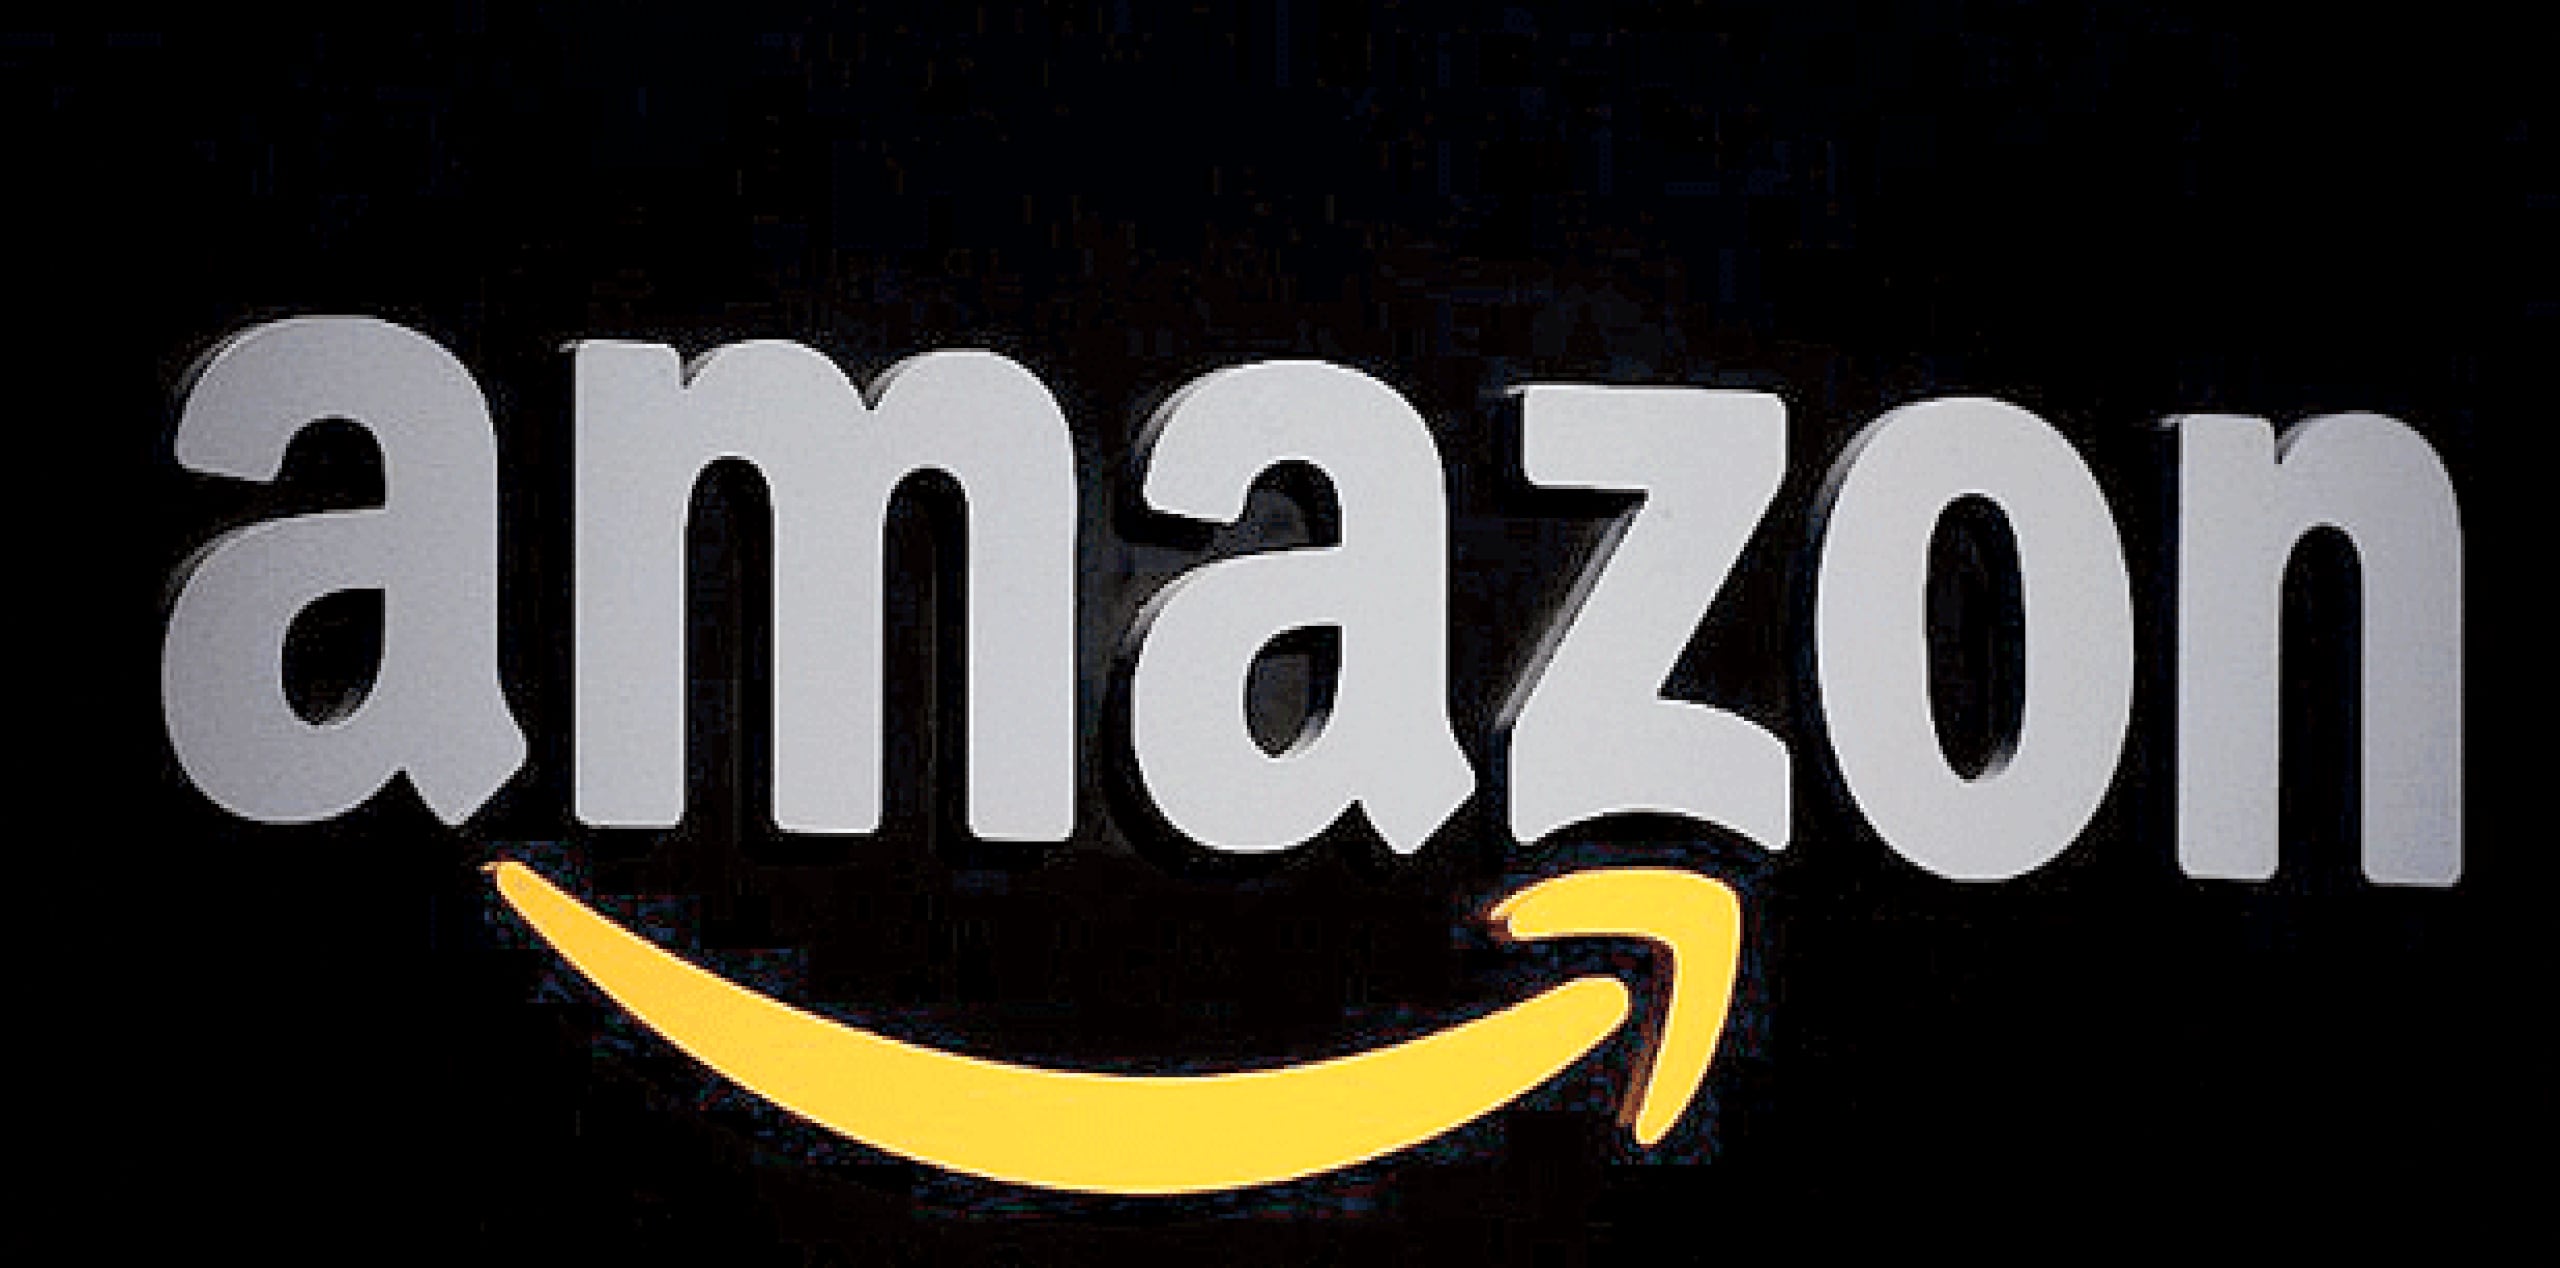 El vicepresidente Paul Misener dijo que Amazon.com comenzará además a colectar voluntariamente a partir del lunes impuestos de ventas a clientes basados en Ohio, como parte del acuerdo. (Archivo)